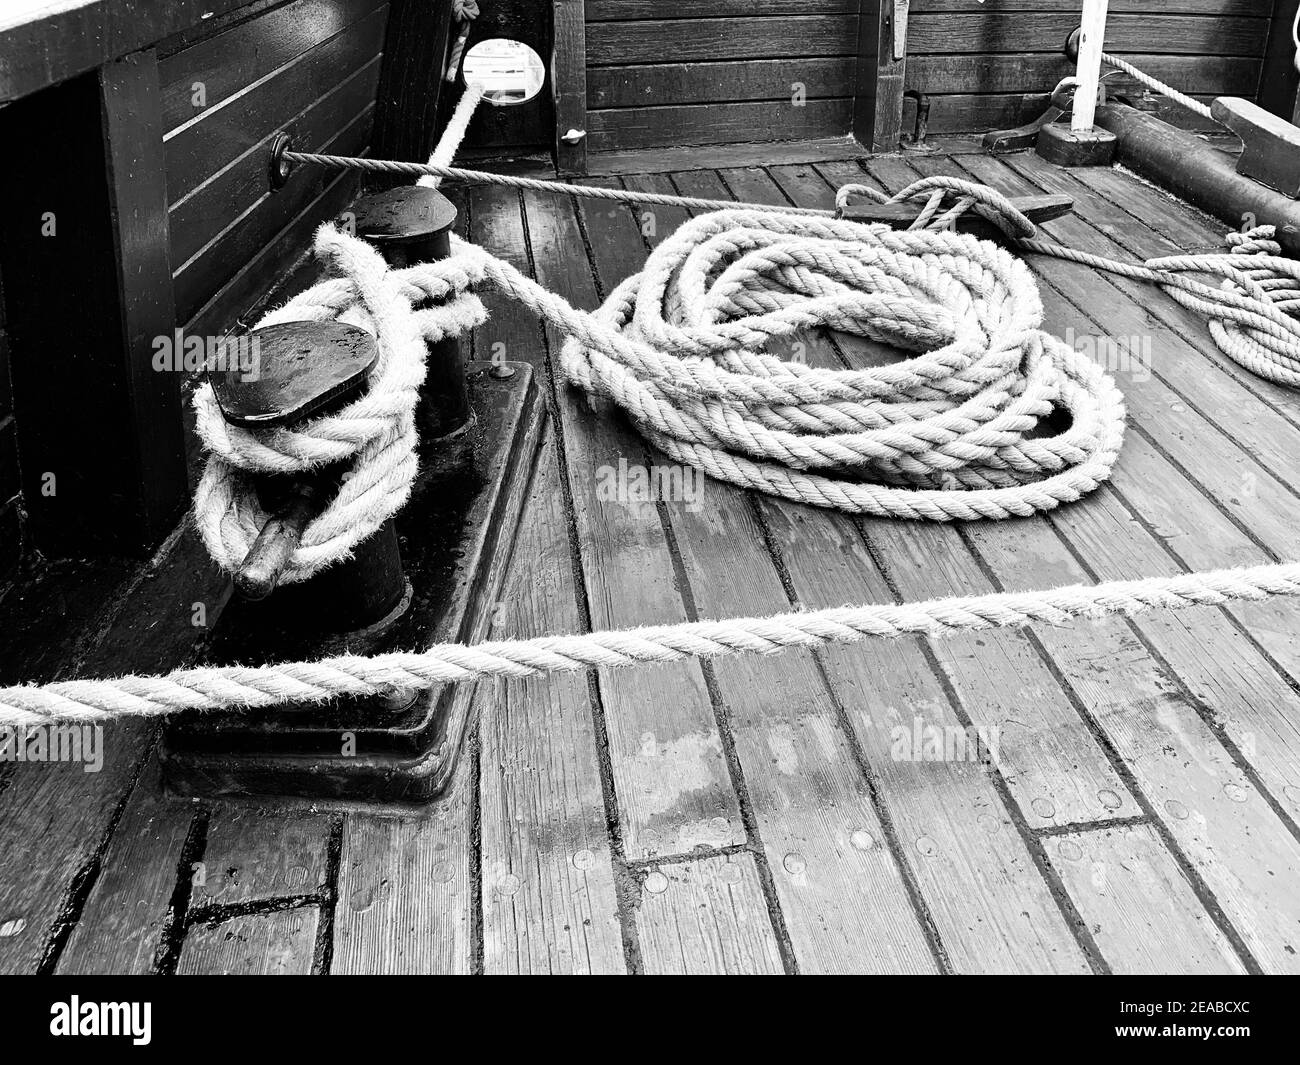 Seile auf dem Deck des historischen Handelsschiffs Lisa Lübeck  Stockfotografie - Alamy